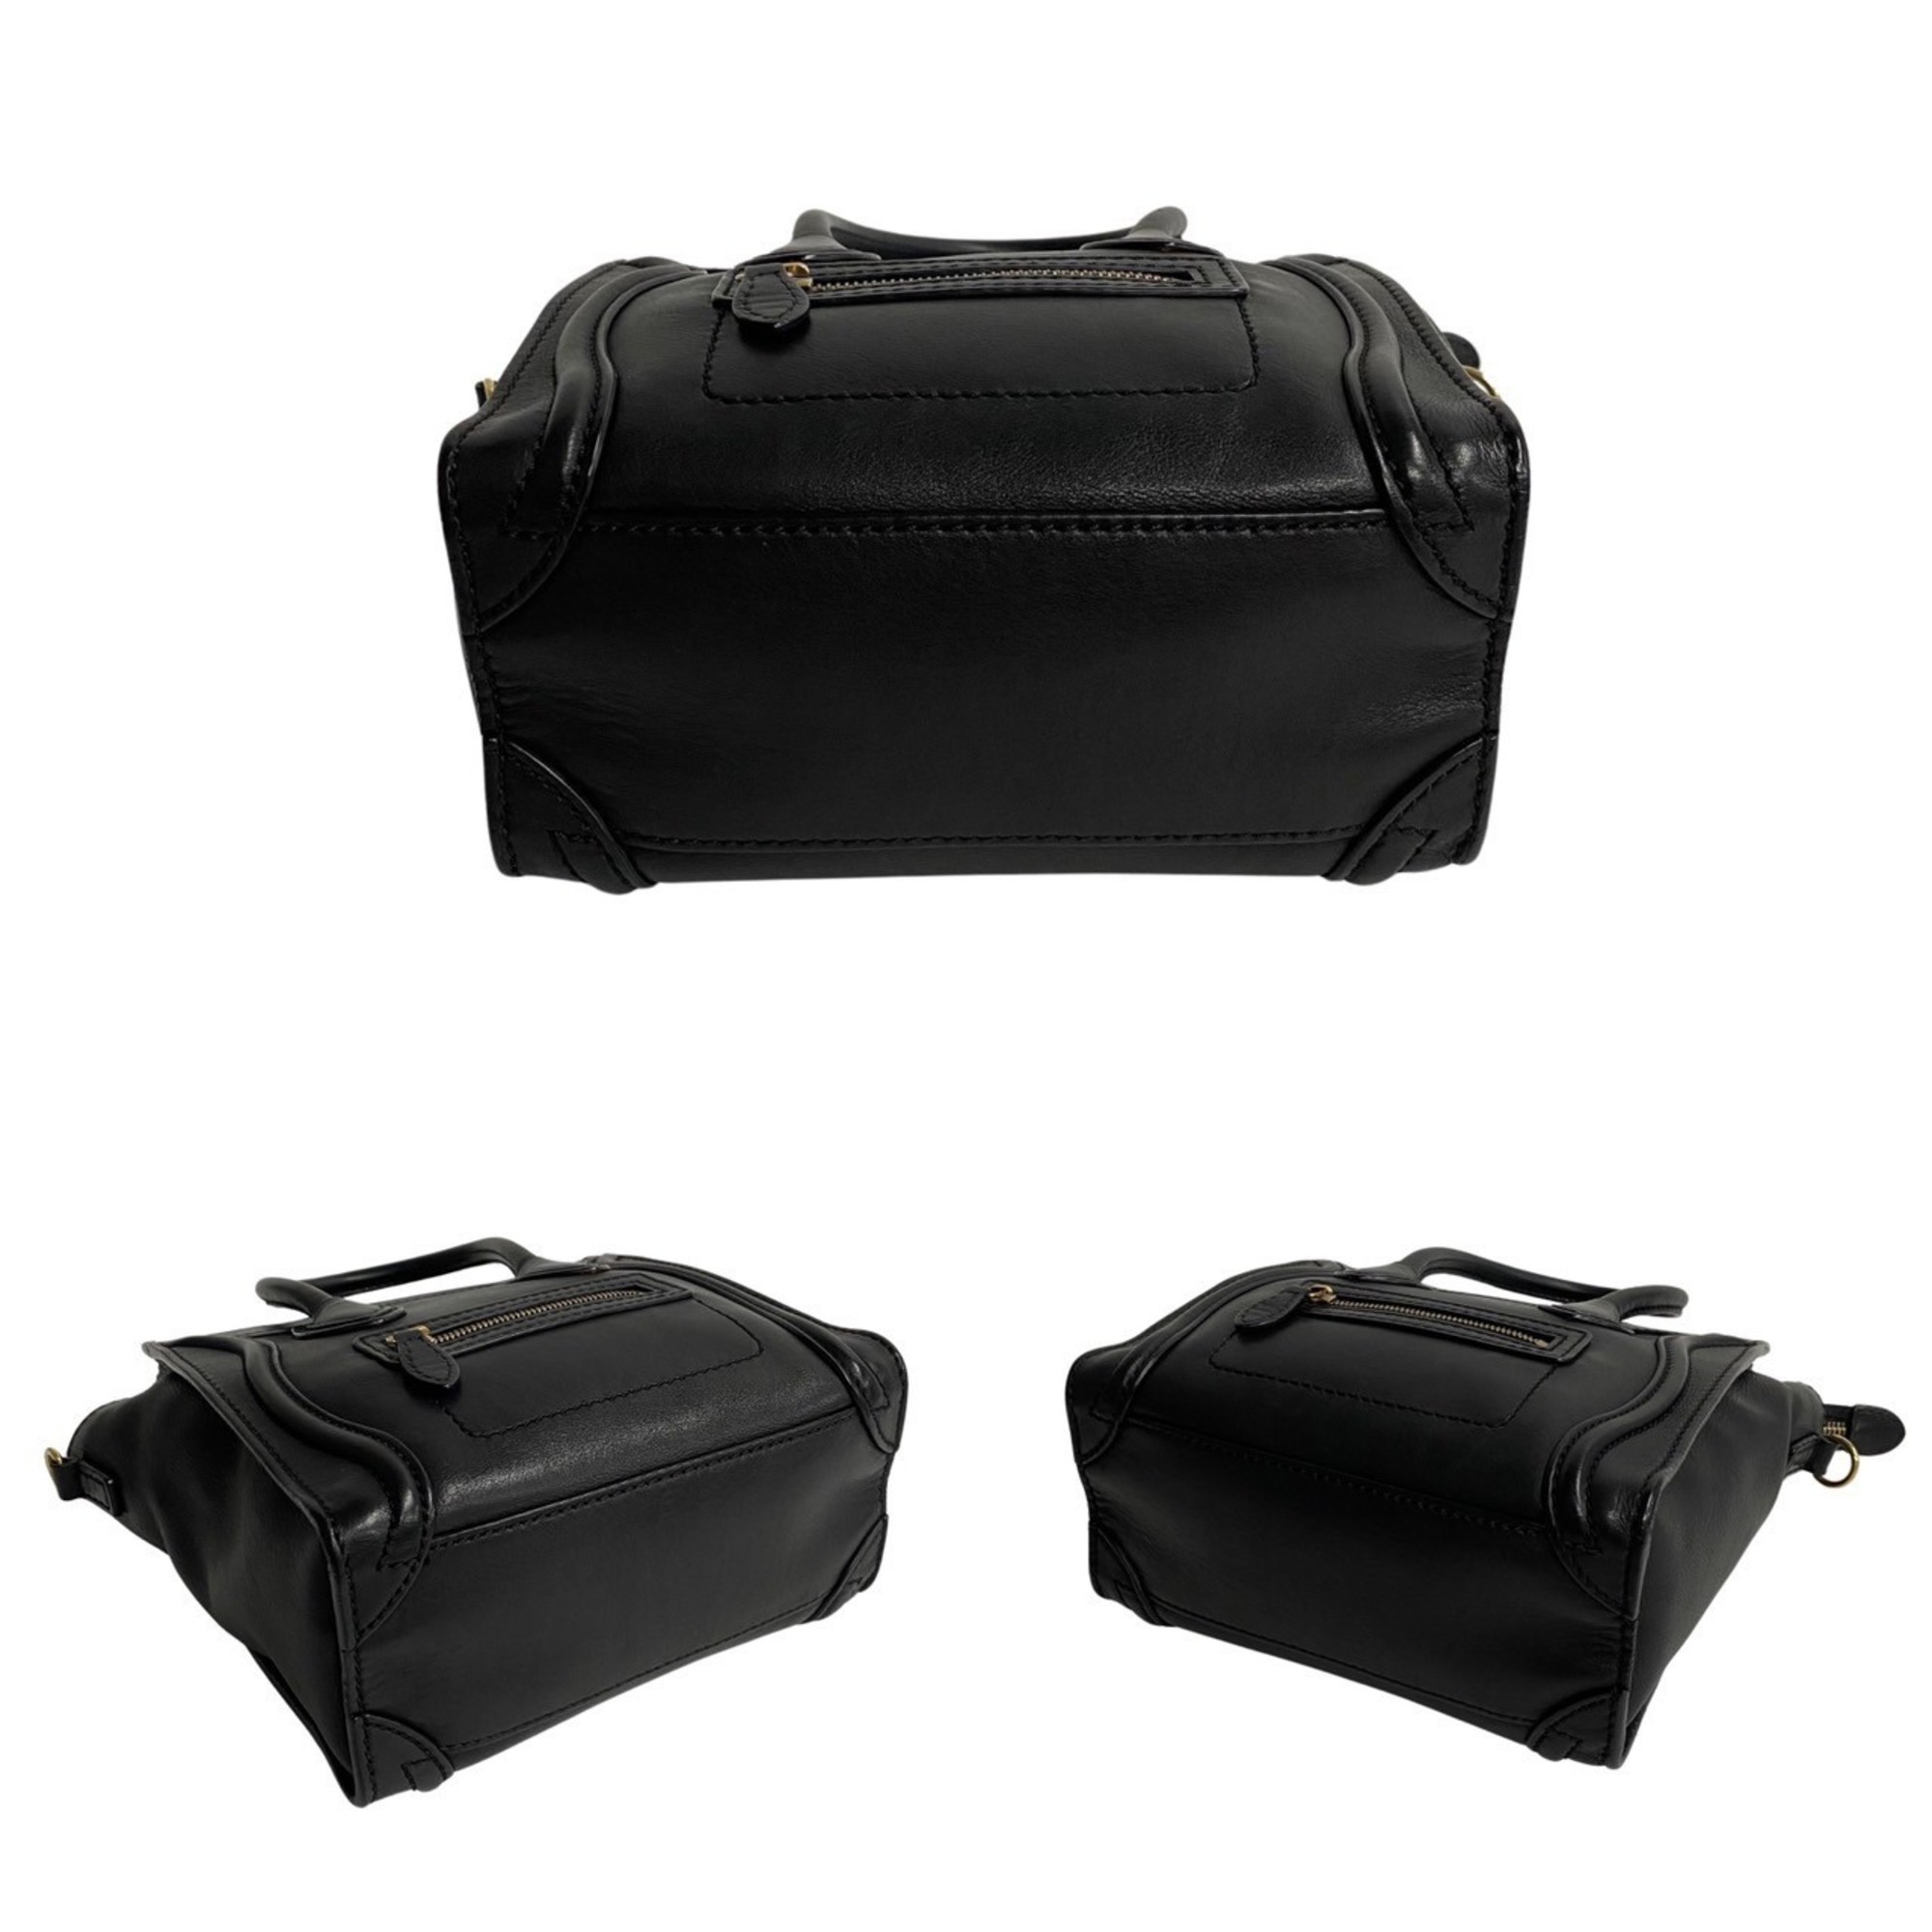 CELINE Luggage Nano Leather 2way Shoulder Bag Handbag Black 16441